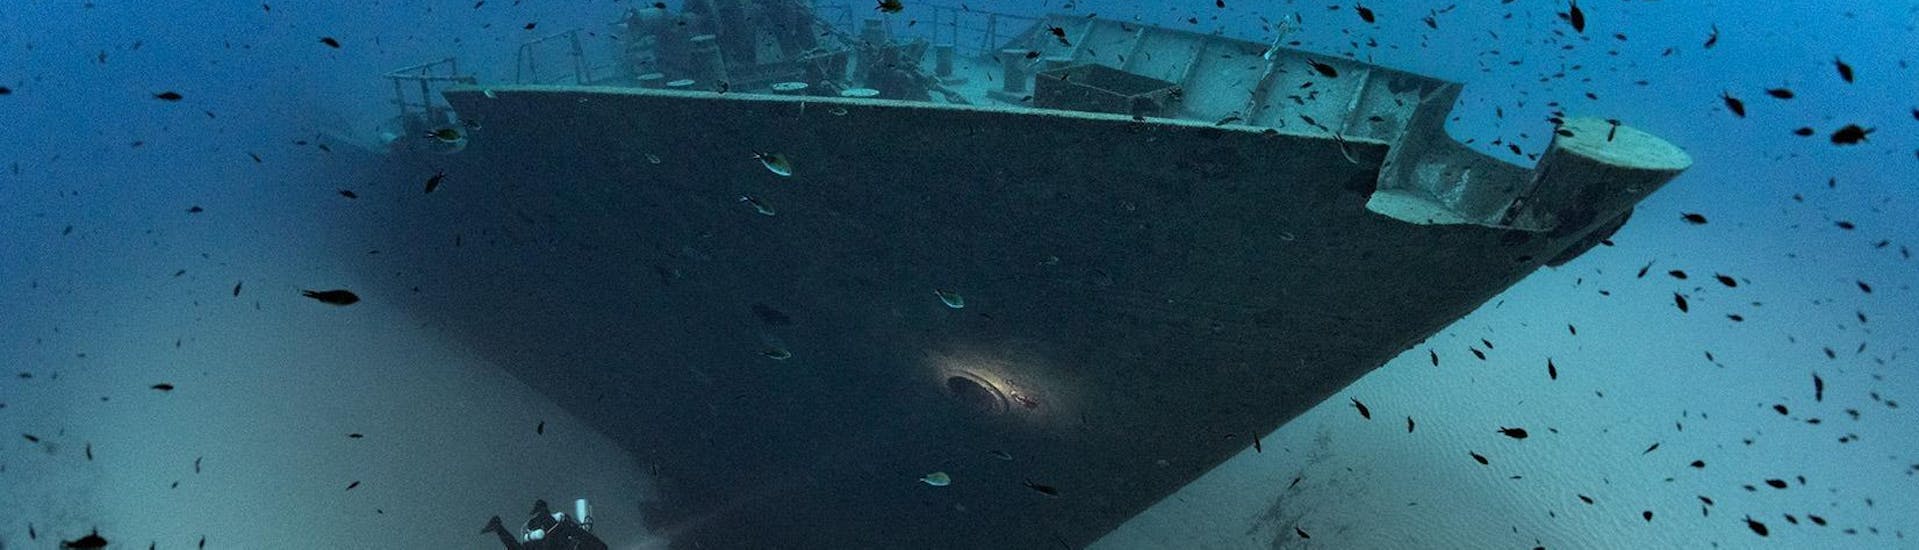 Een duiker onderzoekt een scheepswrak tijdens het wrakduiken op Malta voor gebrevetteerde duikers.